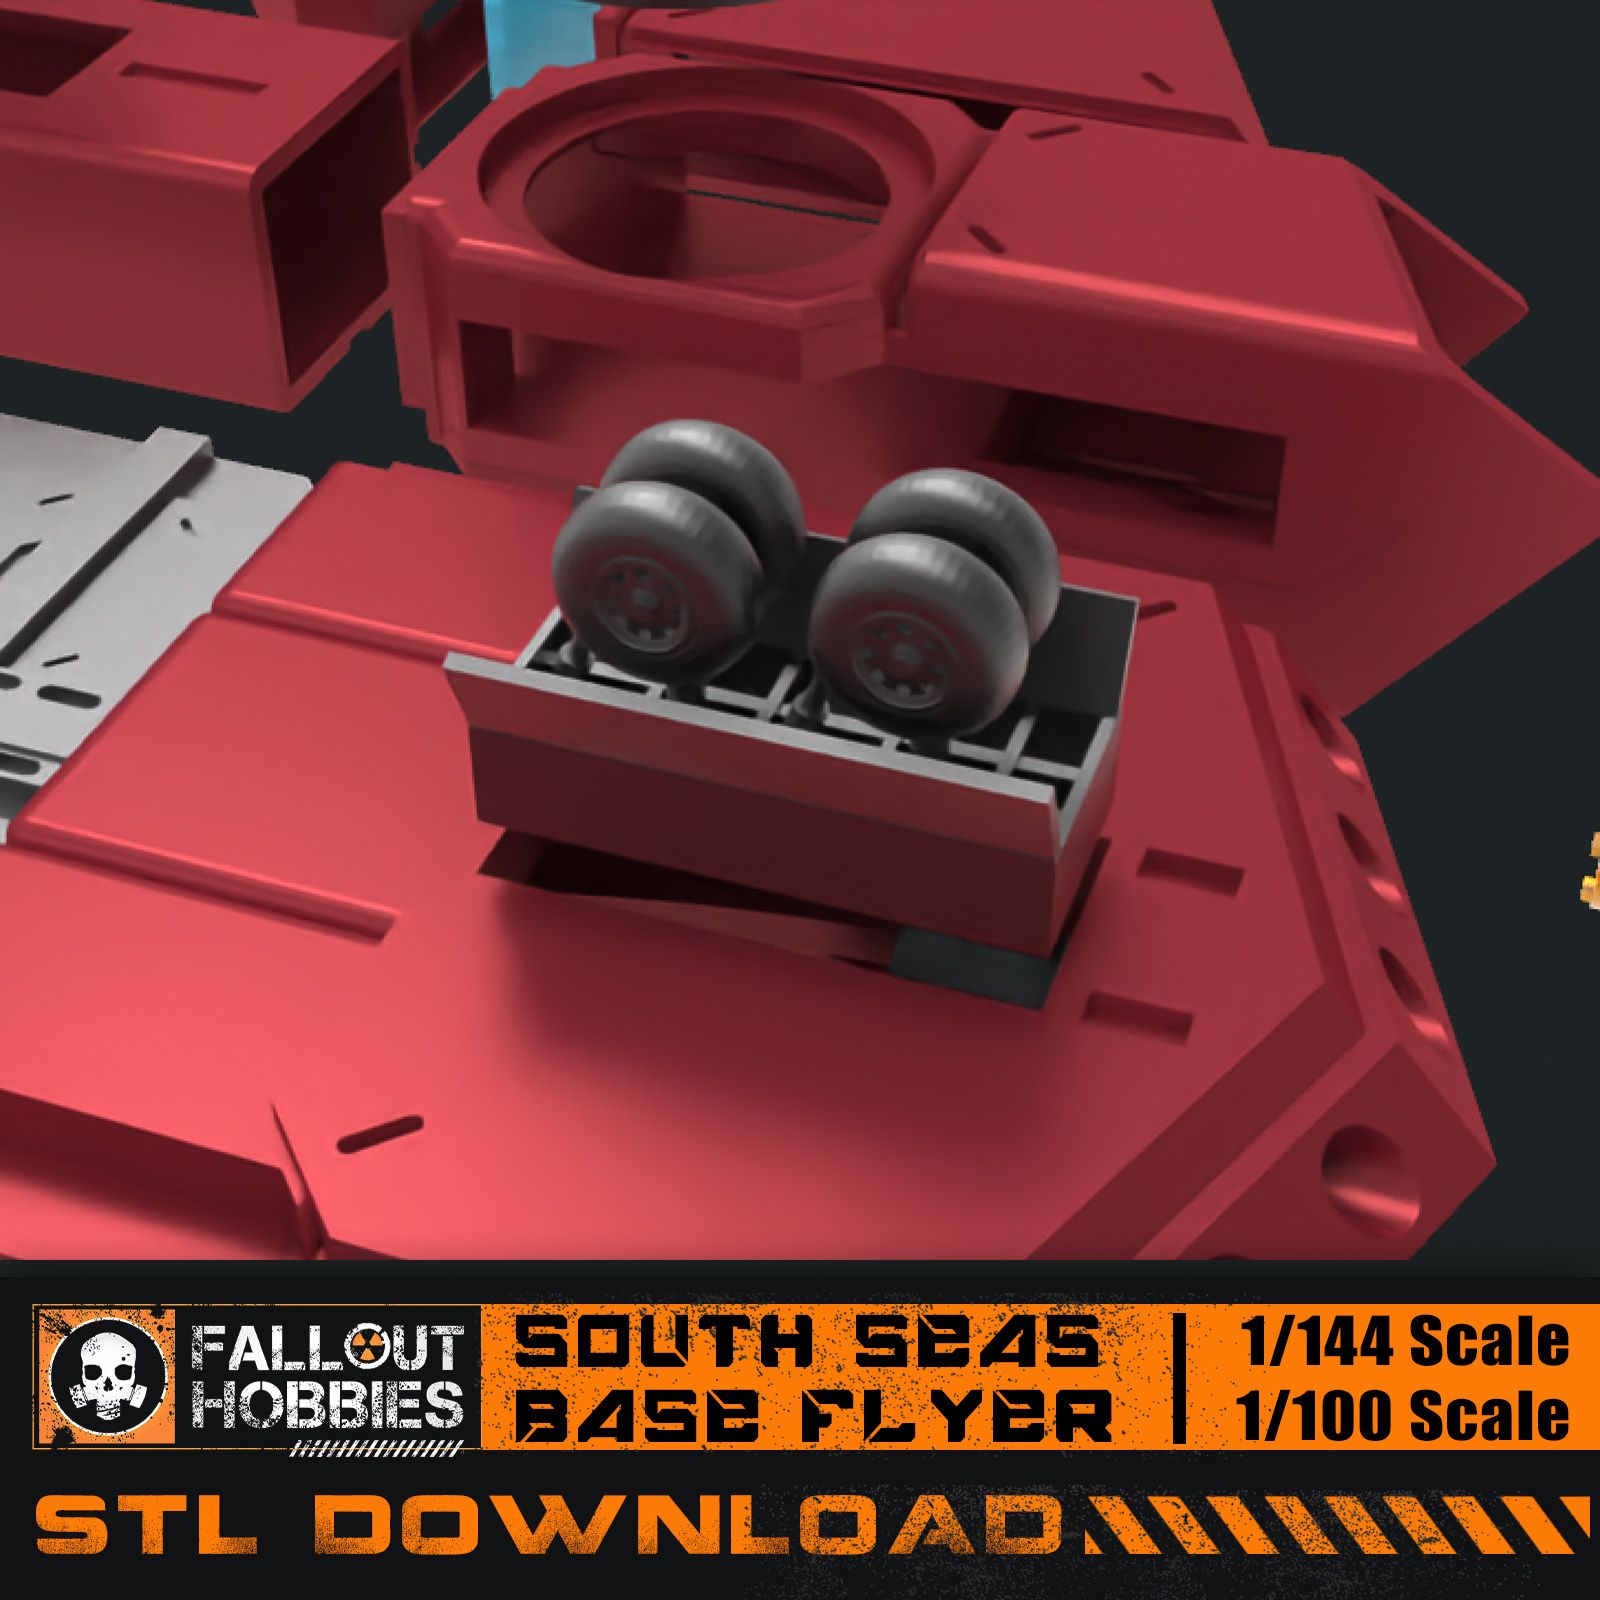 South-Seas-Base-Flyer-7.jpg 3D-Datei Südsee Base Flyer 1/100 1/144・3D-druckbares Modell zum herunterladen, FalloutHobbies